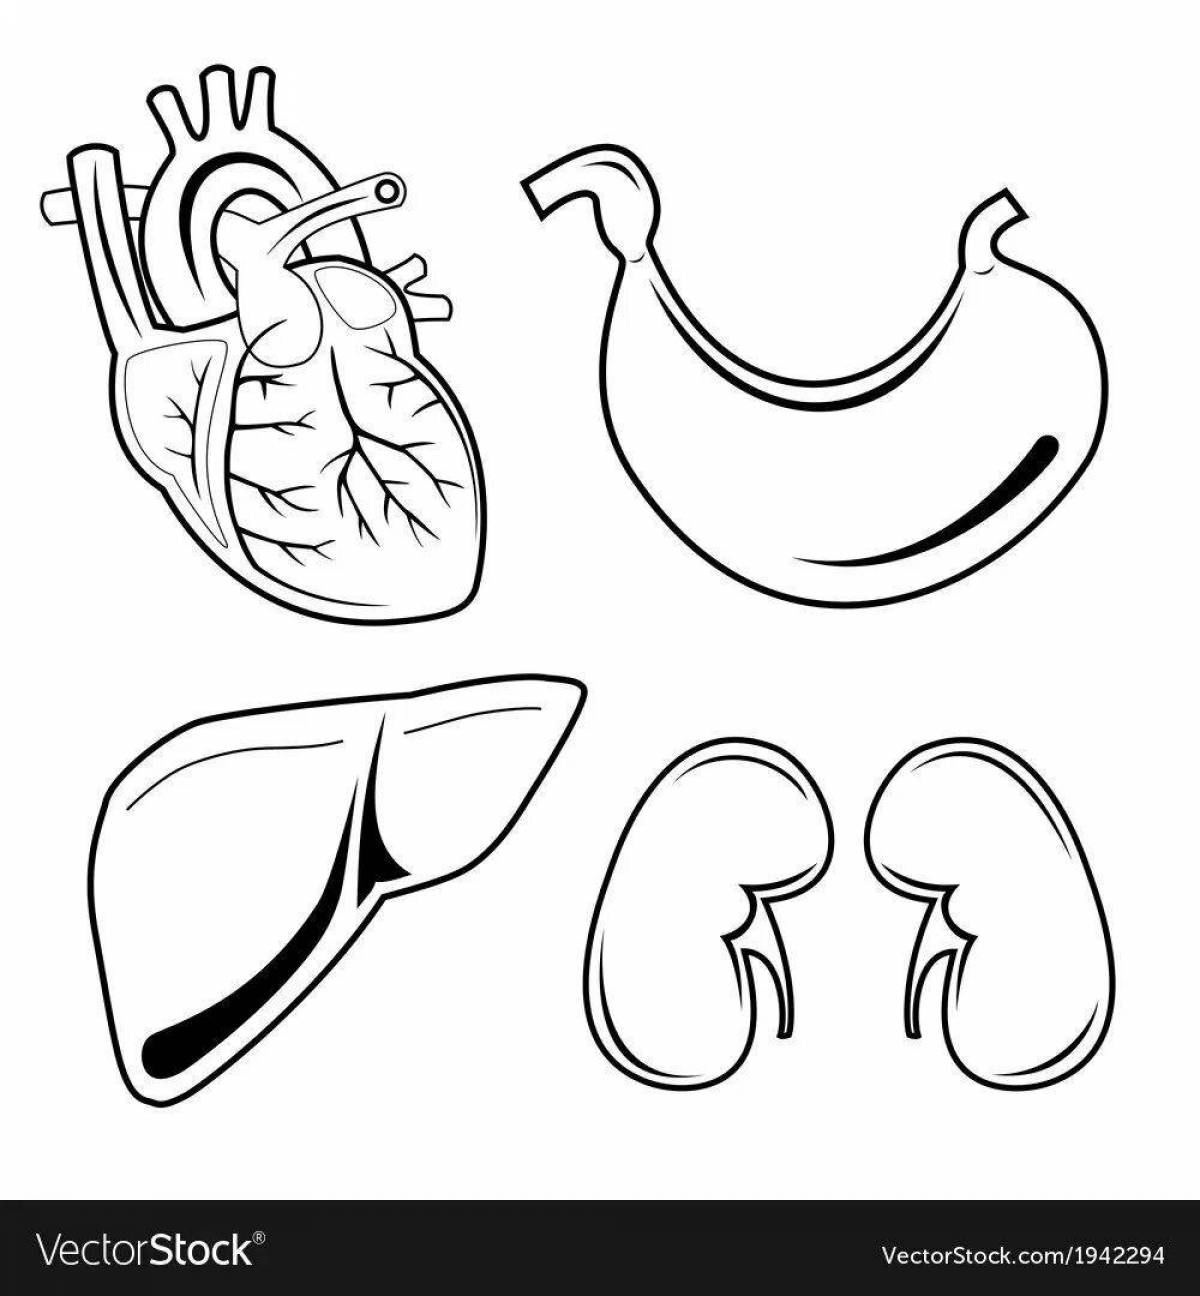 Human internal organs for children #5